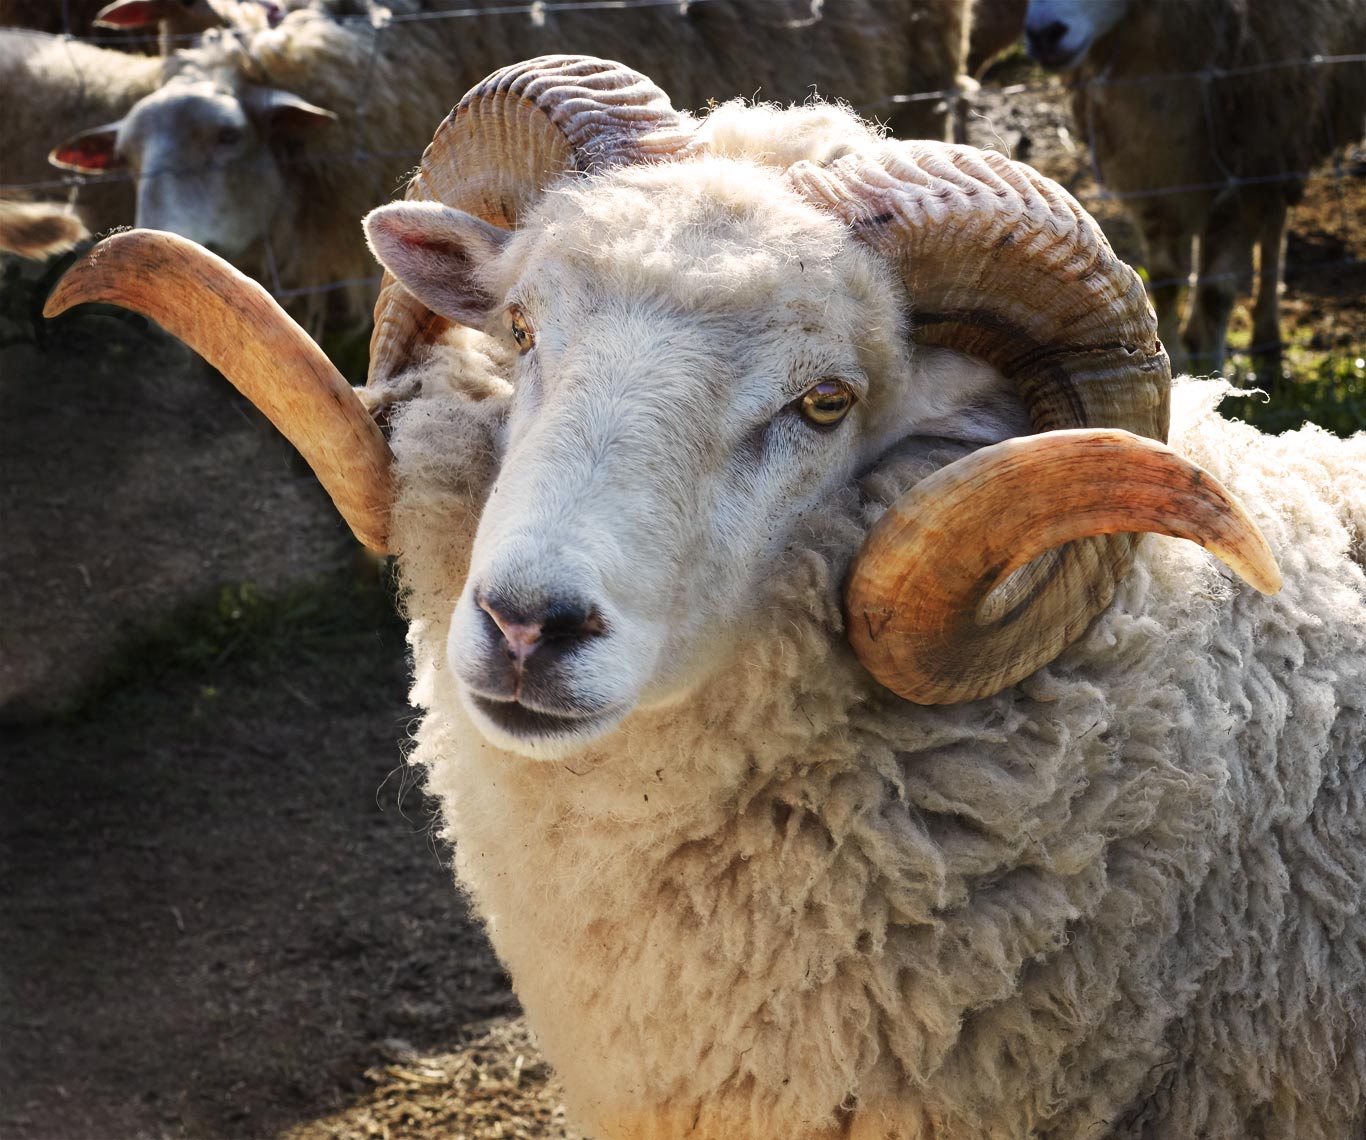 Ram horn on the farm